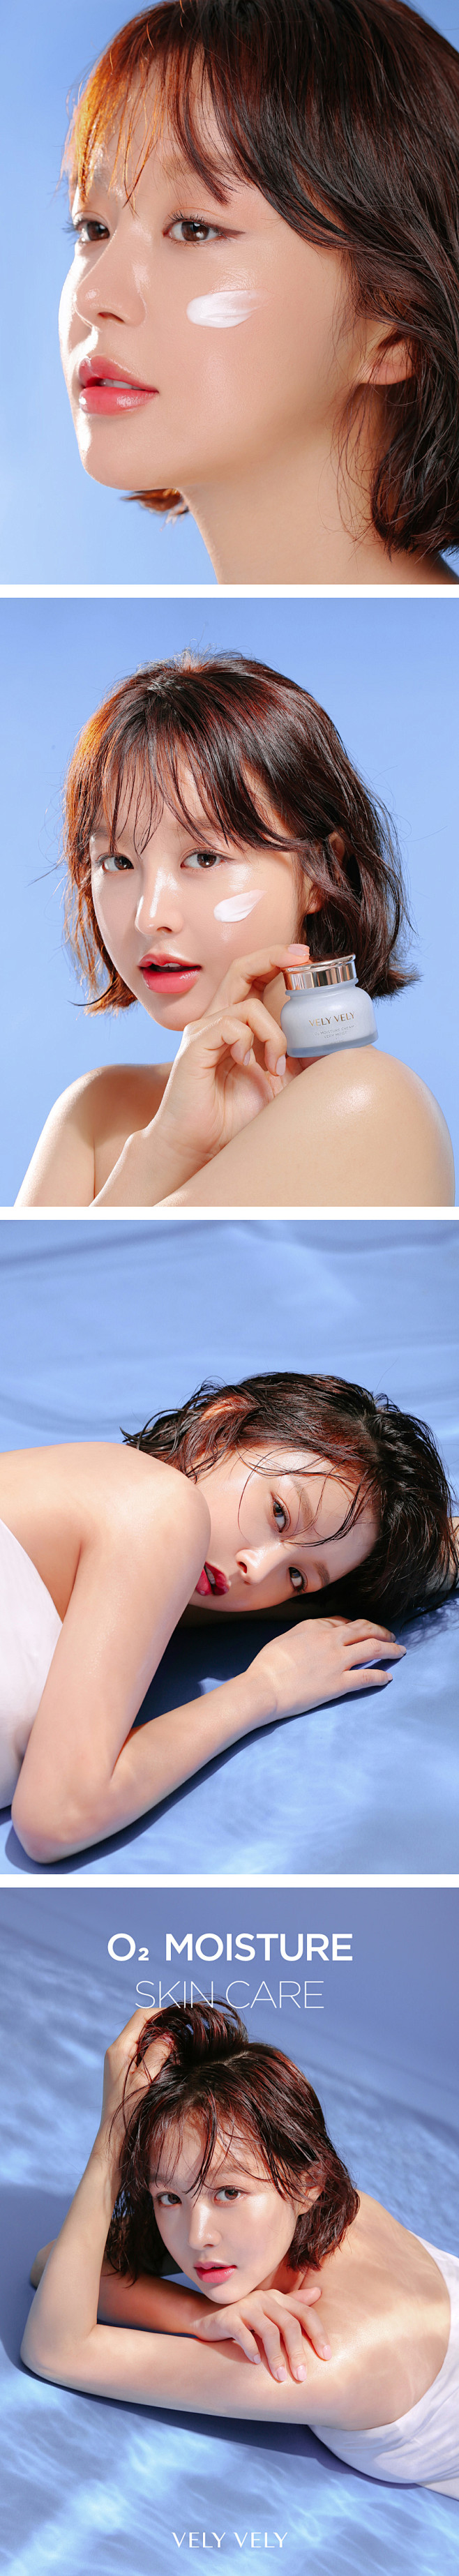 电商设计 韩国美女护肤彩妆模特 淘宝美工